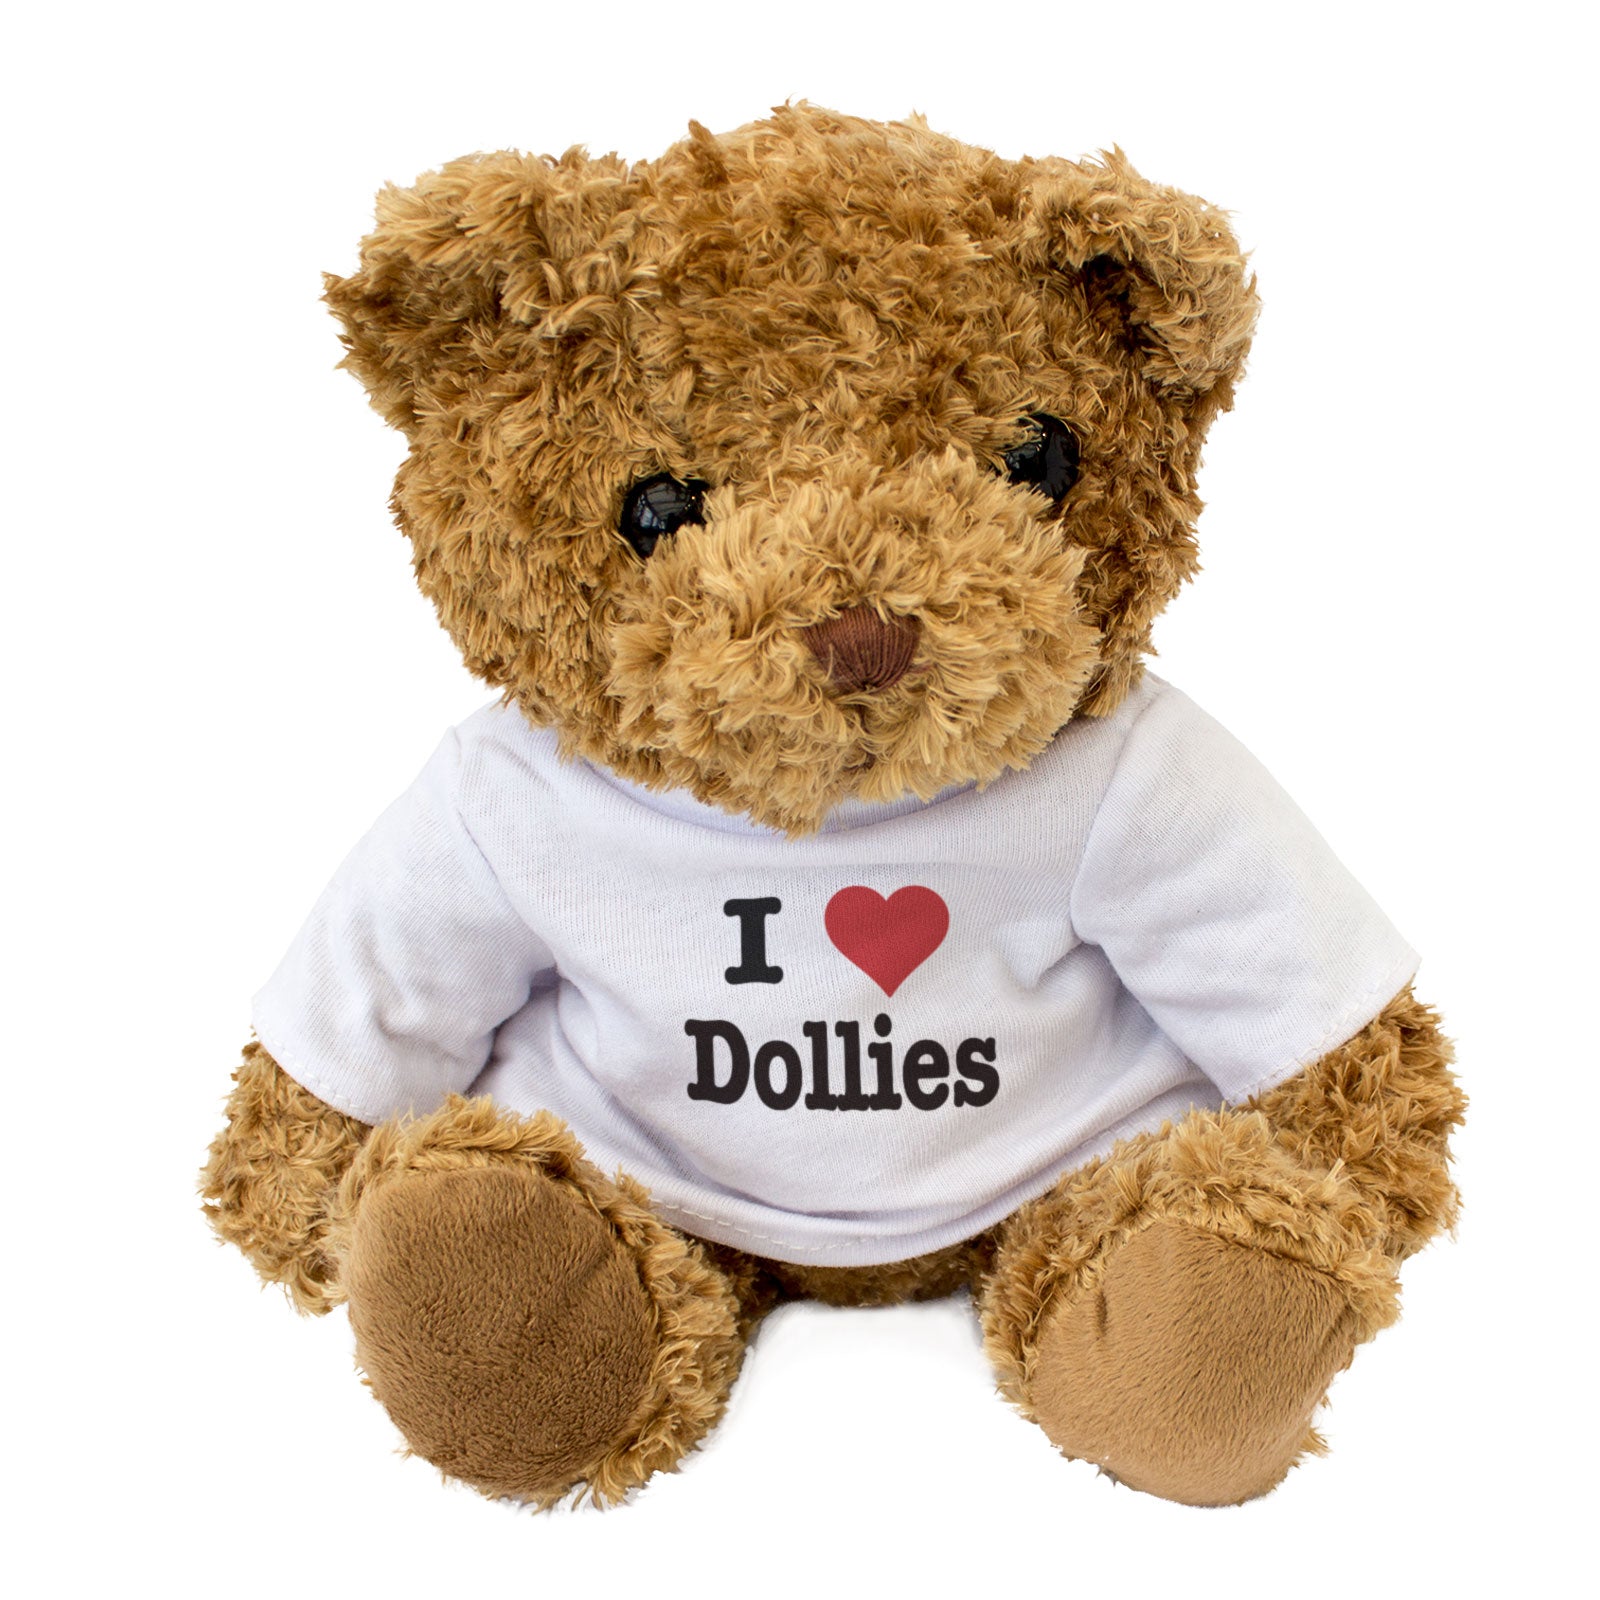 I Love Dollies - Teddy Bear